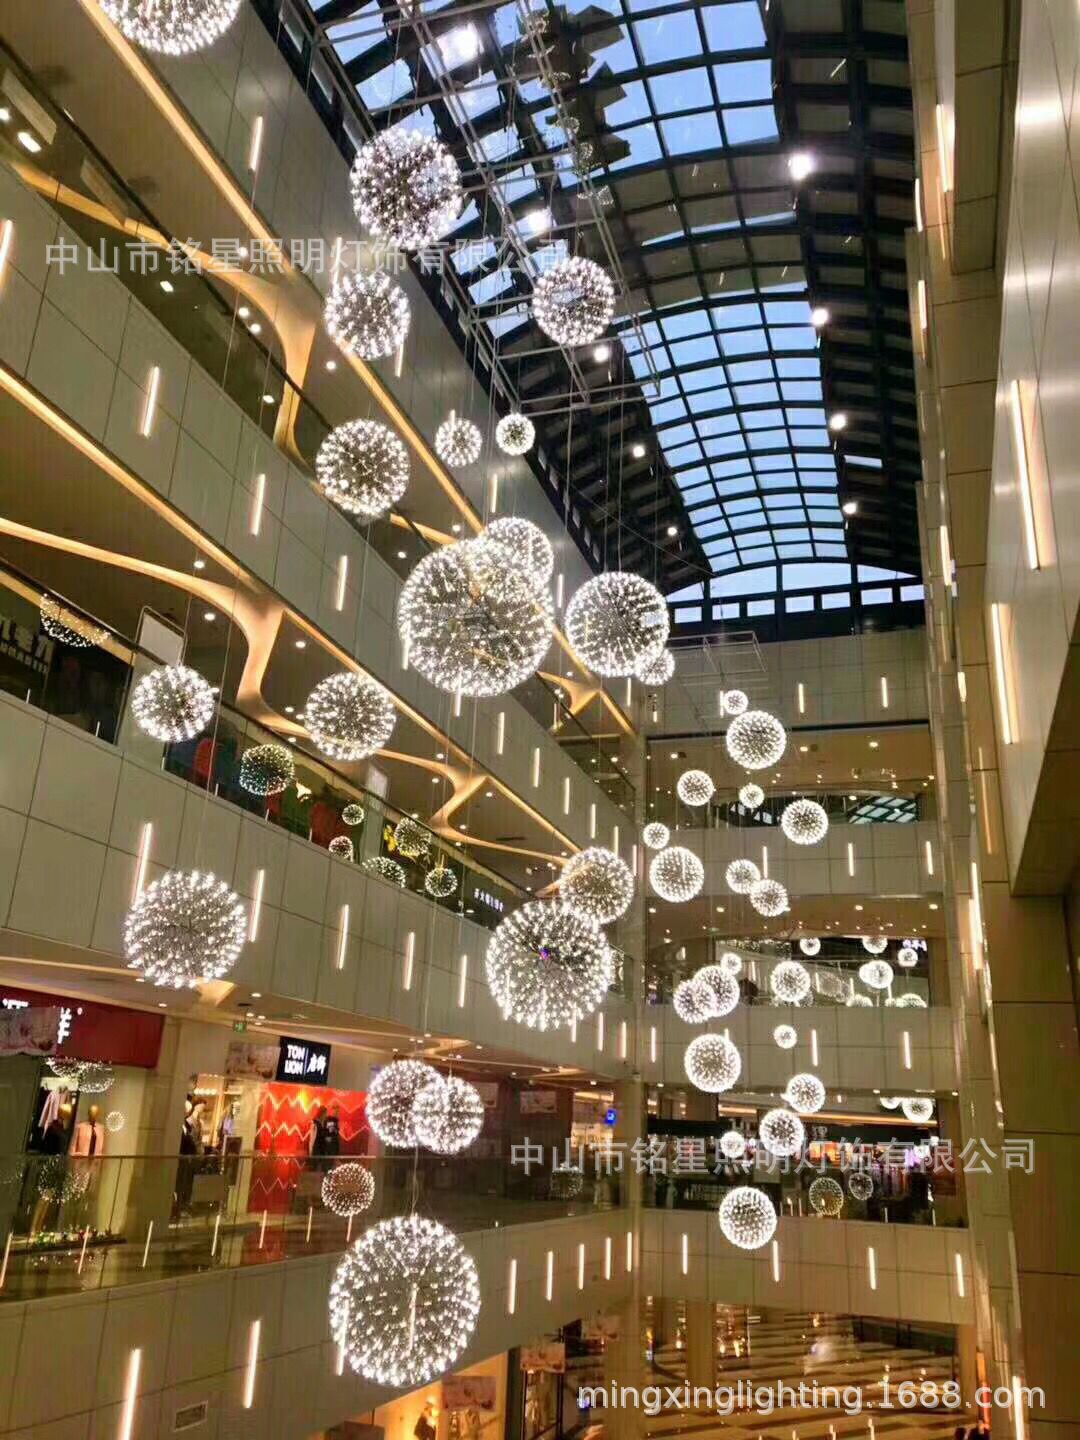 【中庭吊饰】不锈钢蒲公英圆球灯商场中庭装饰满天星LED球型吊灯示例图6